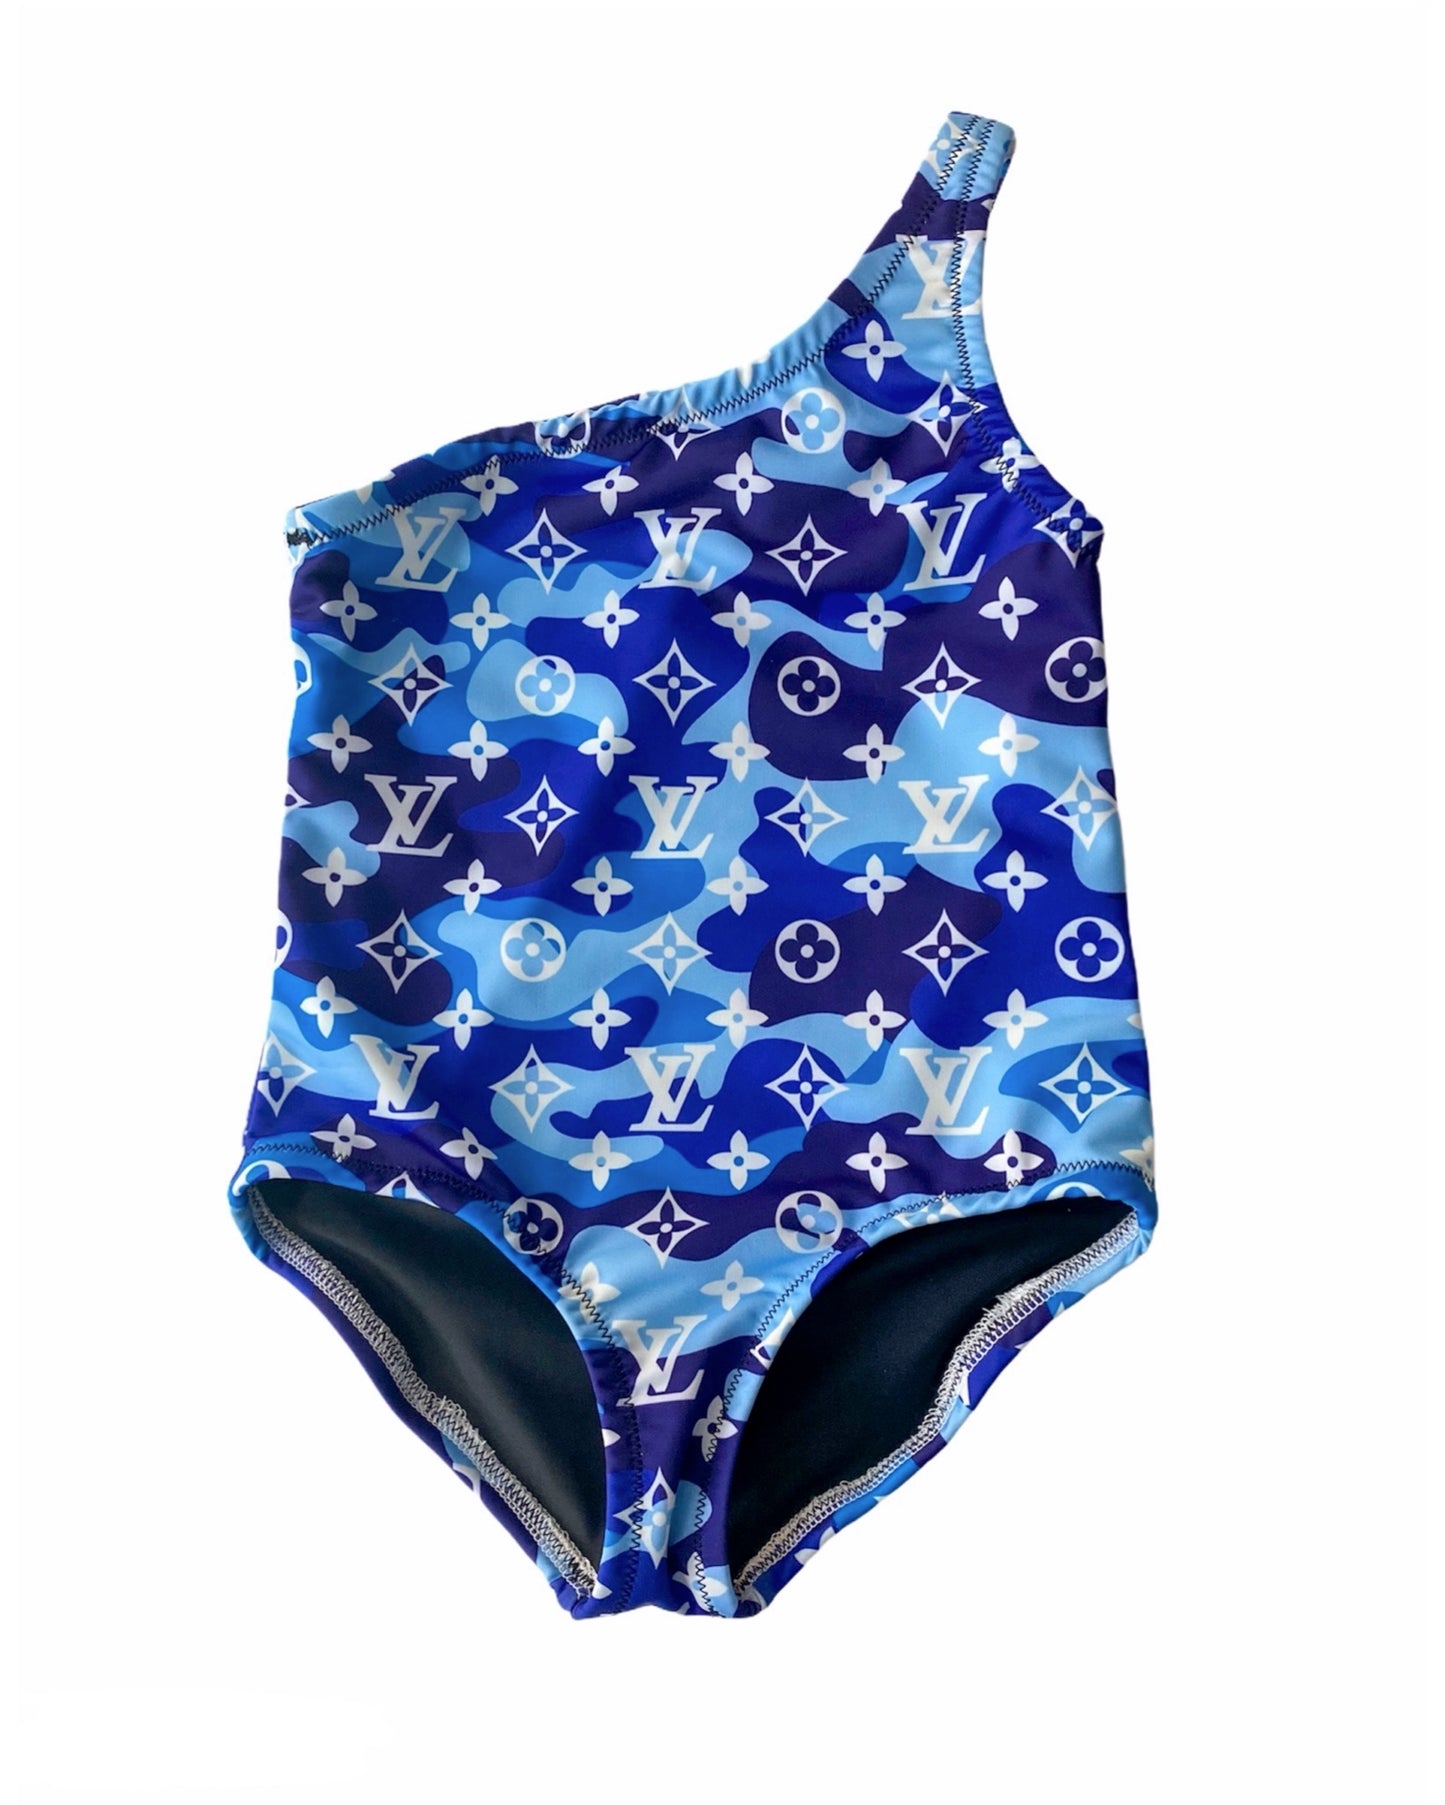 Blue Camo Swimsuit